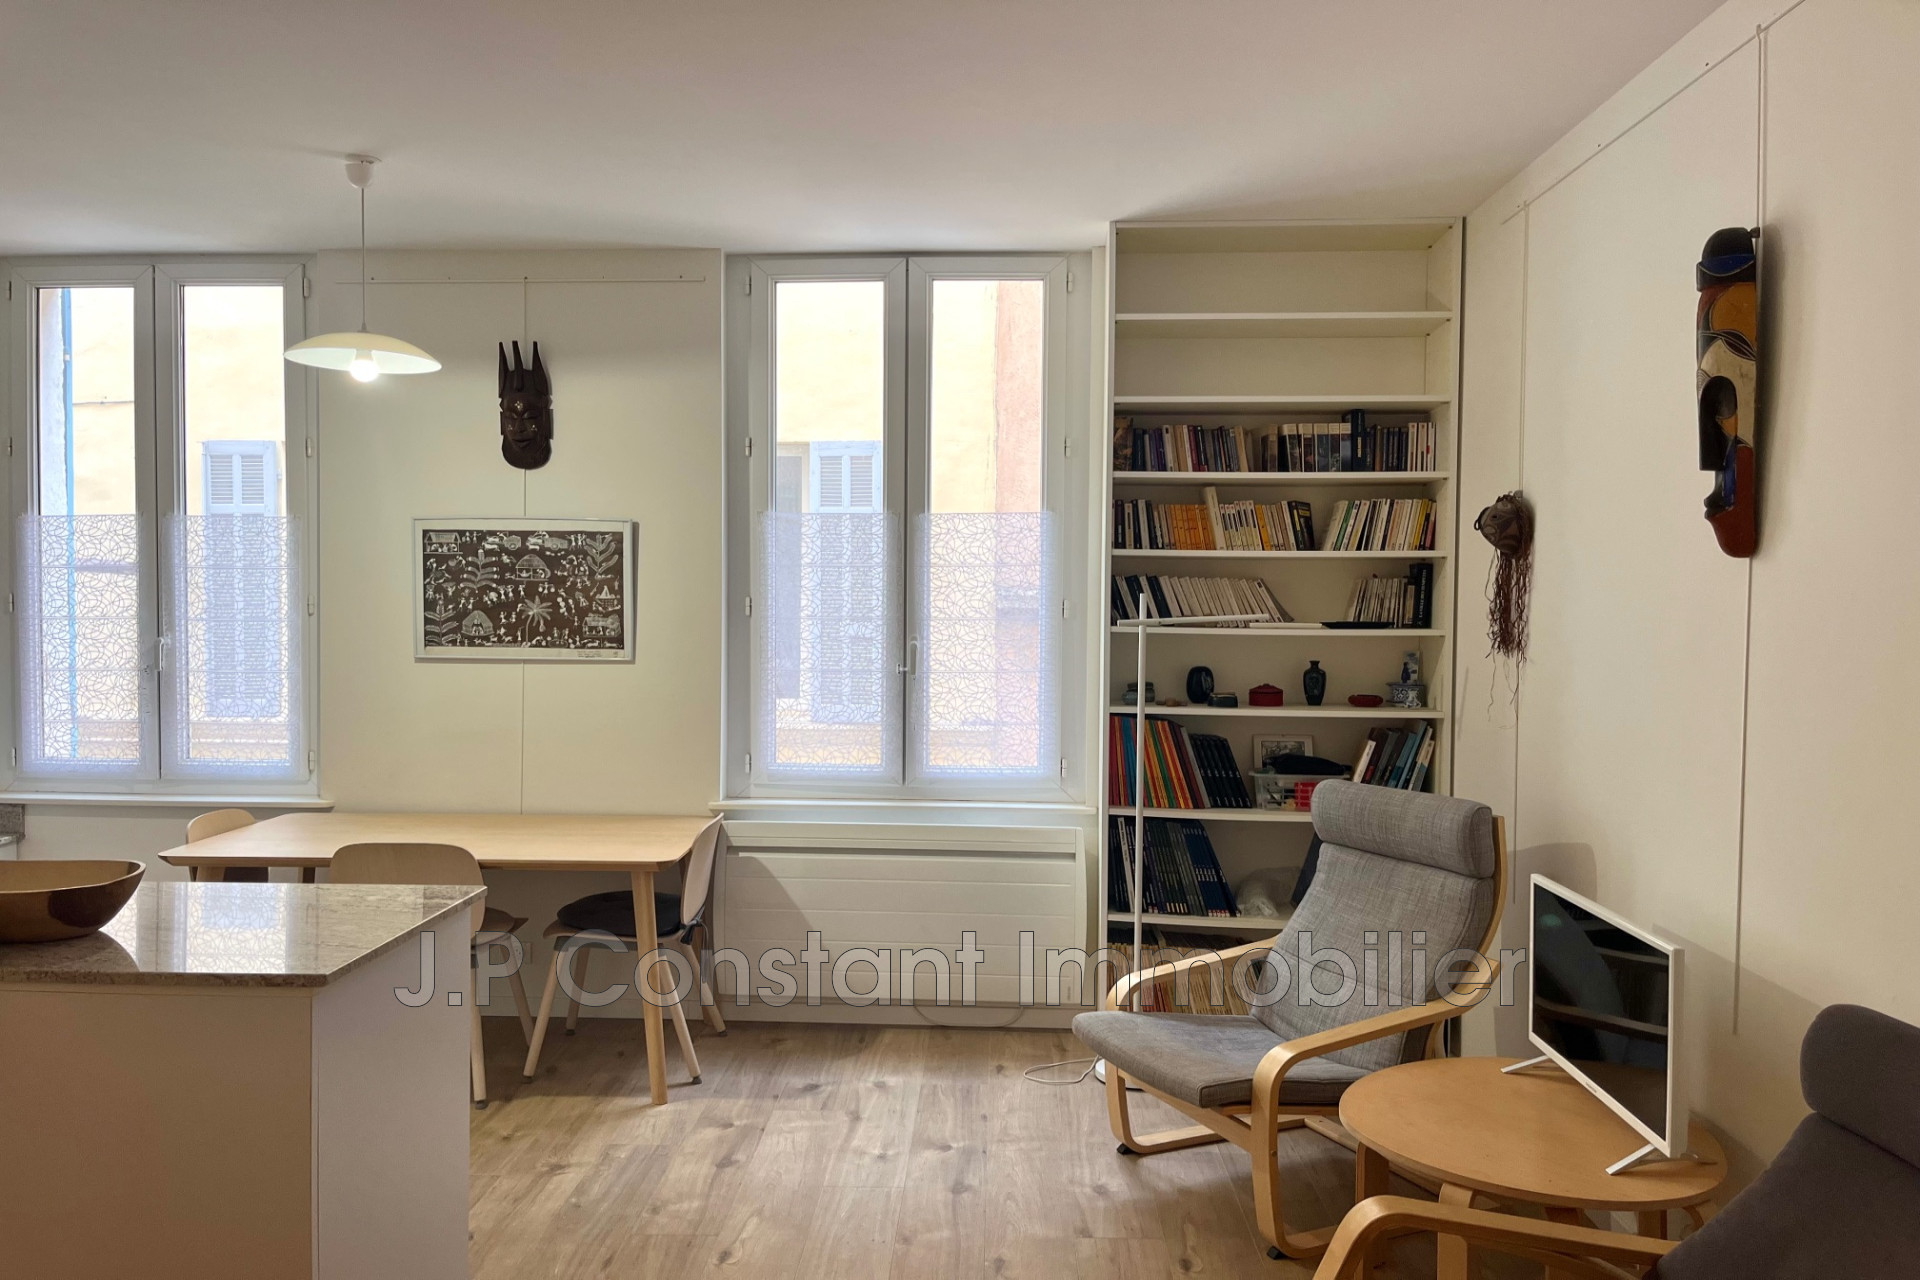 Vente Appartement 32m² à La Ciotat (13600) - Jp Constant